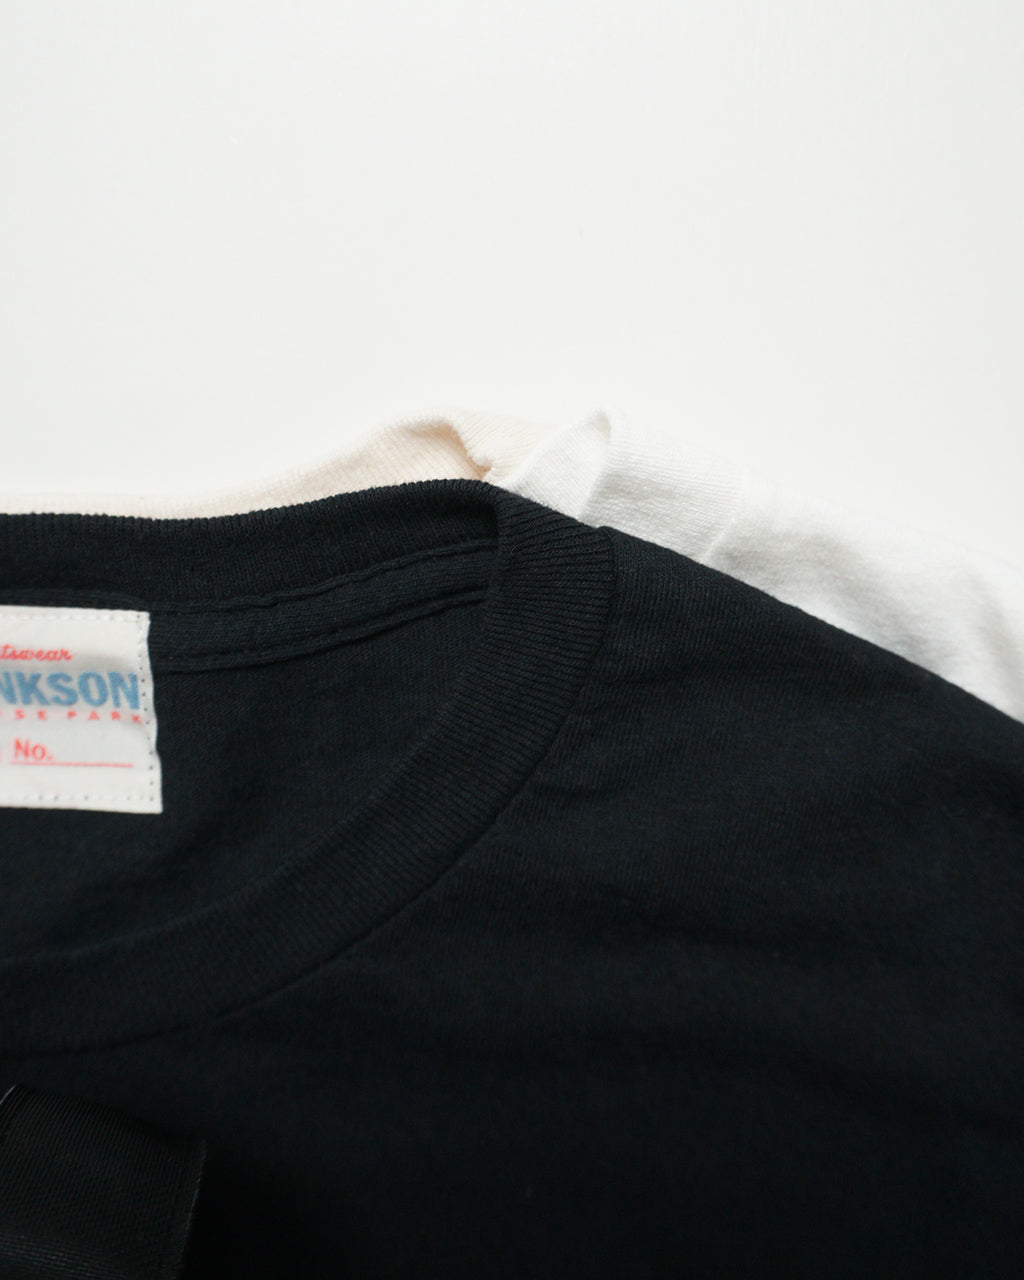 JHANKSON ジャンクソン ネセサリー 6.0 ショートスリーブ Tシャツ NECESSARY 6.0 S/S TEE ロクマルティー 半袖 カットソー 24003